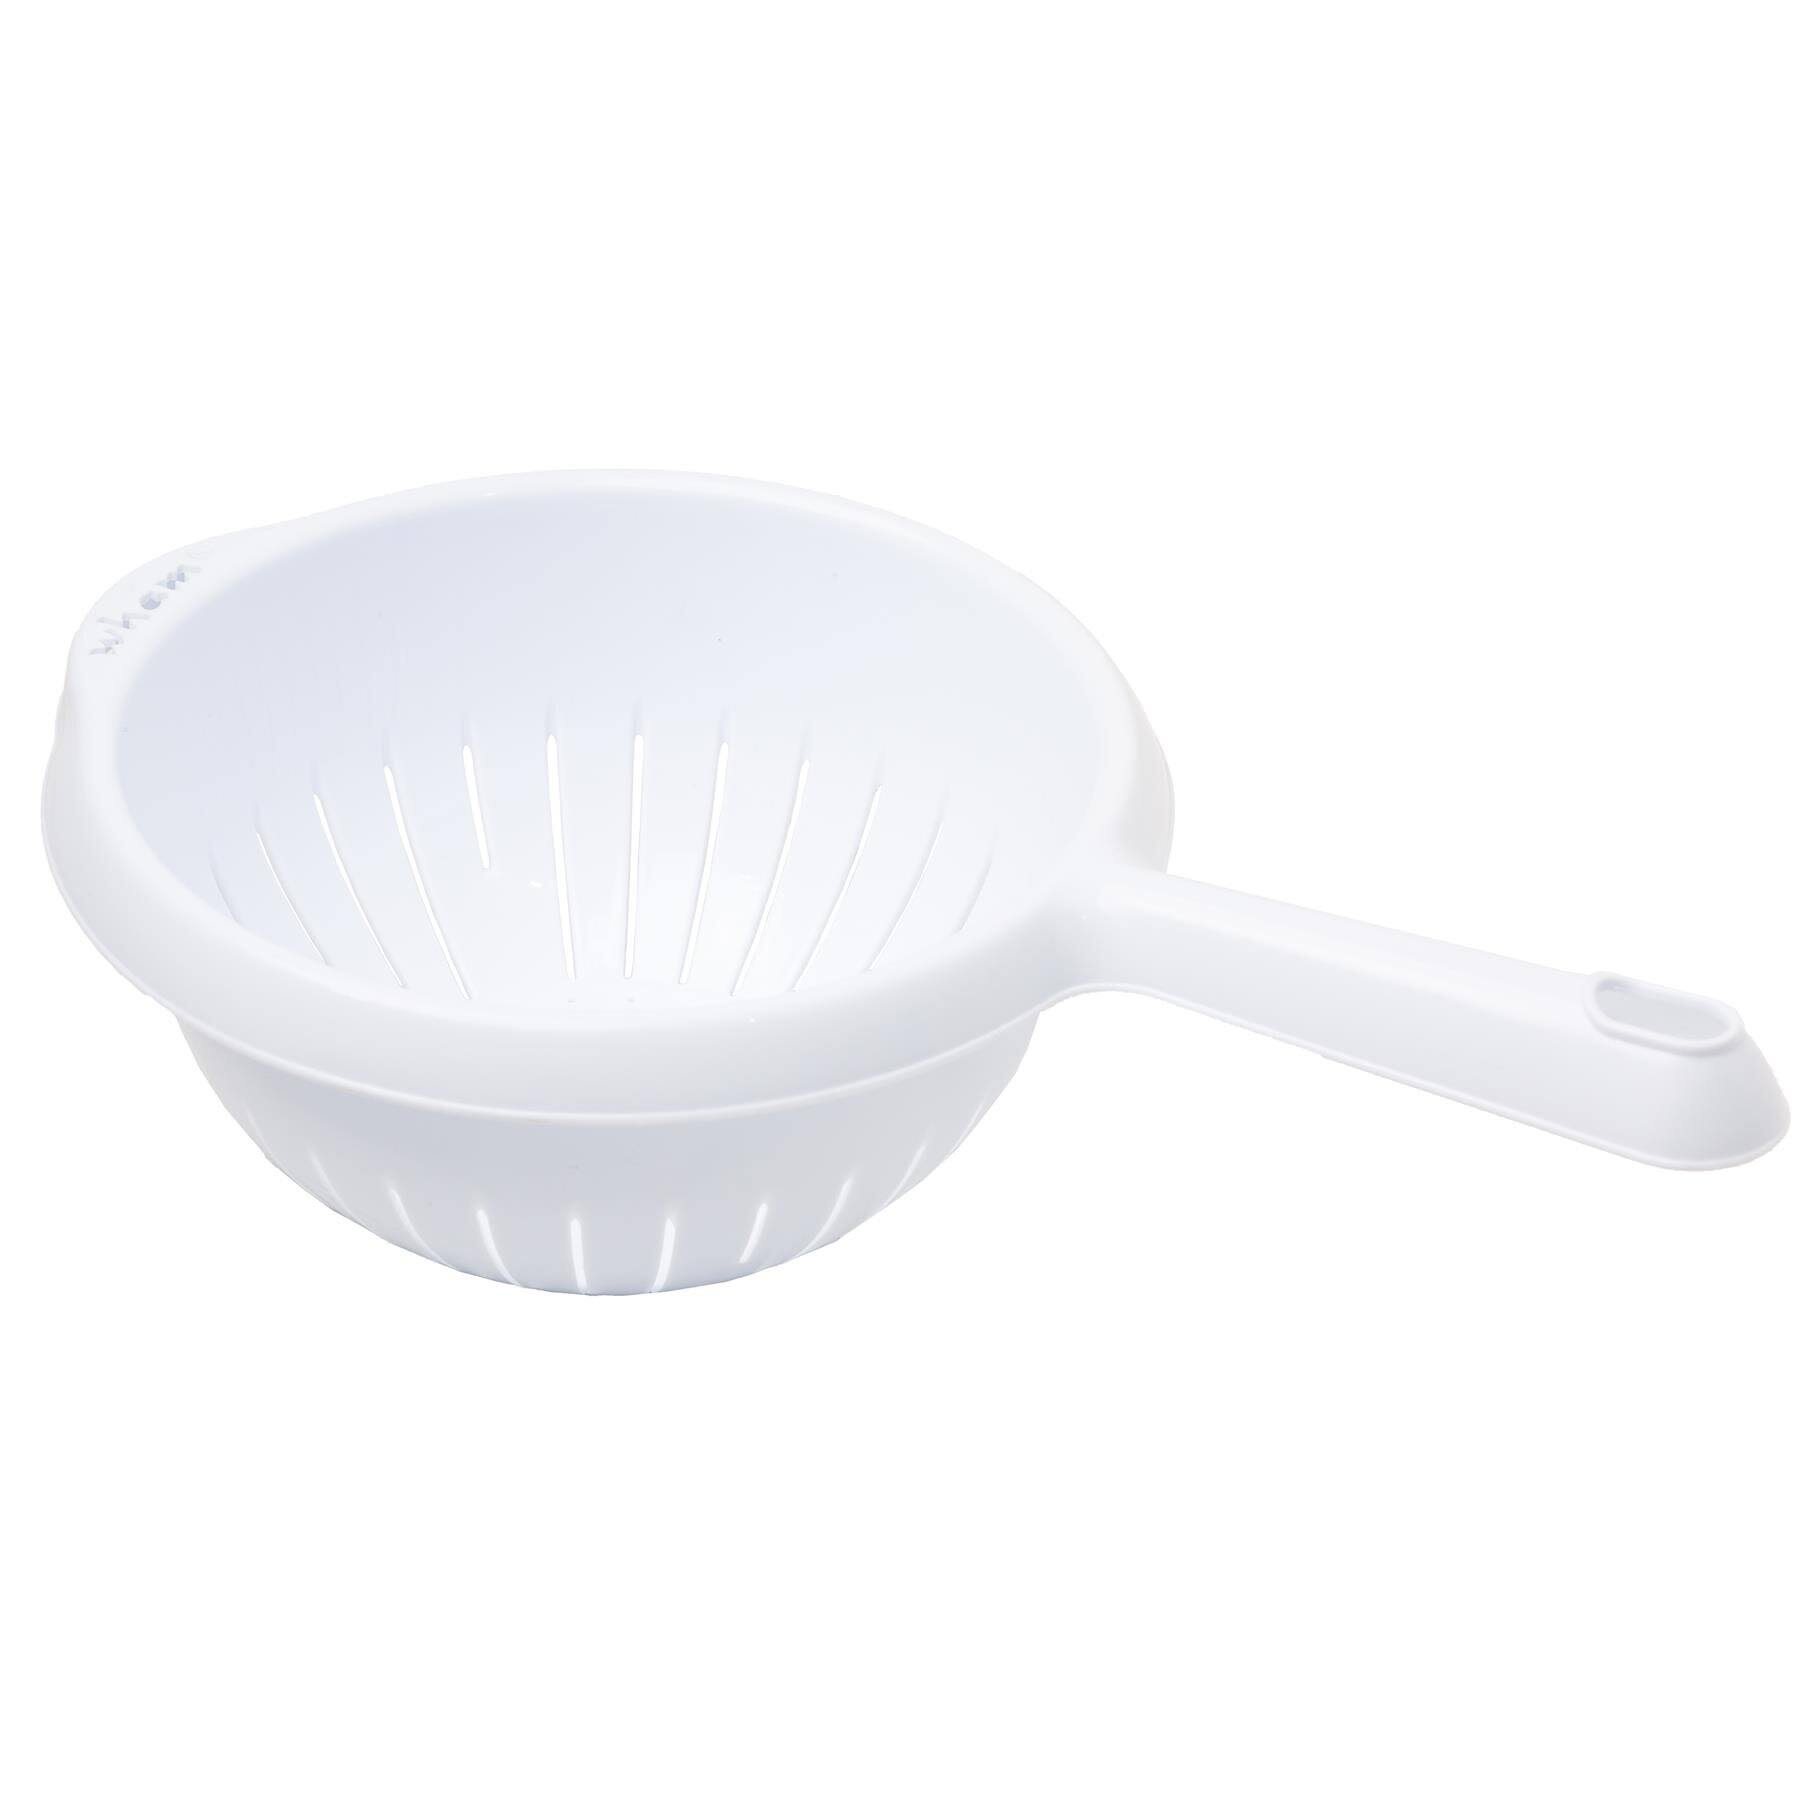 Wham Cuisine Handled Colander - Hardwearing - Ice White - Dishwasher Safe - 20cm